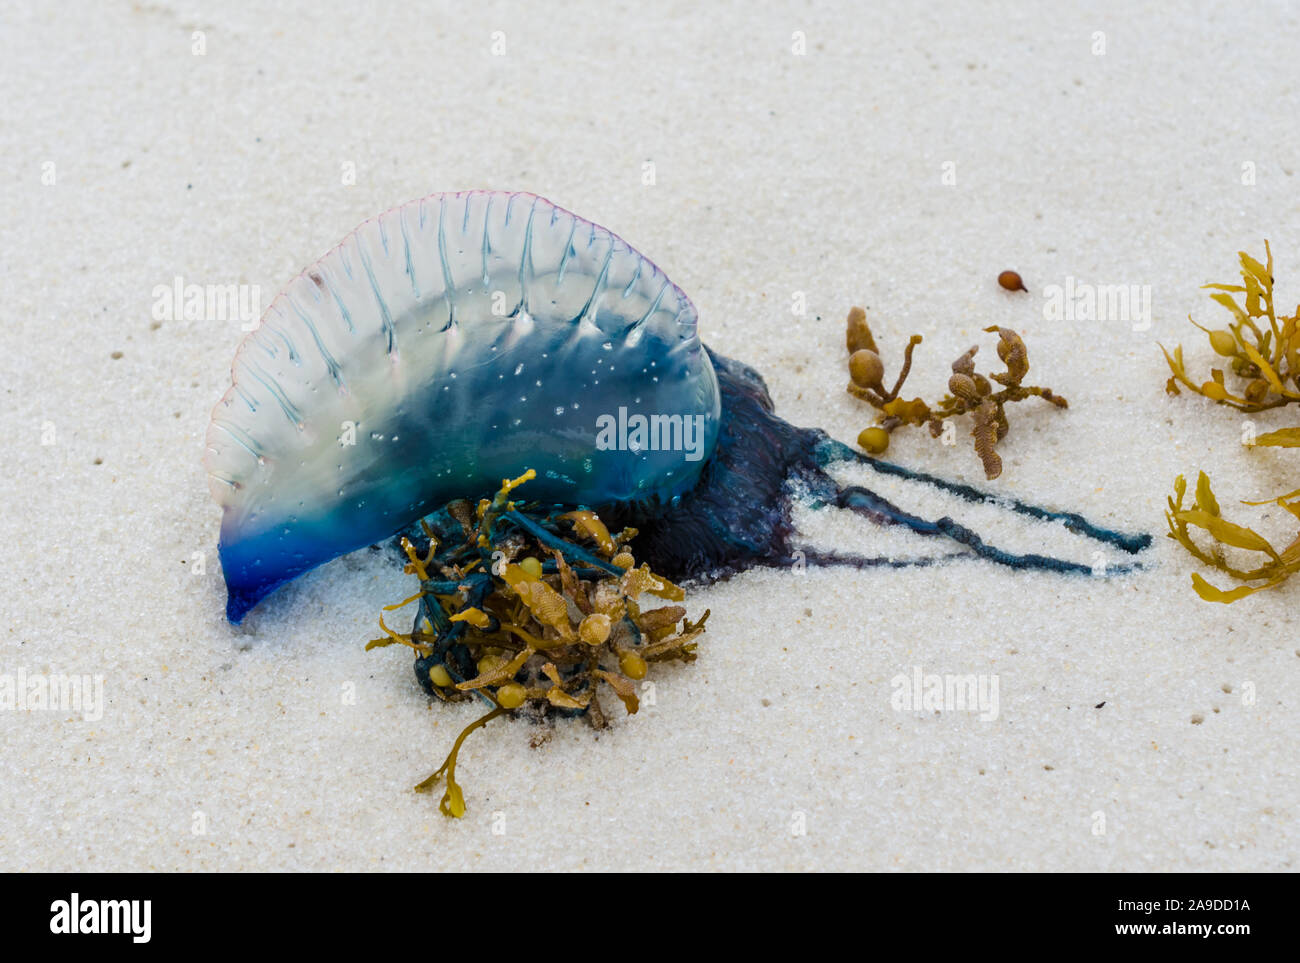 Uomo portoghese o' War meduse lavato fino sulla costa del Golfo ocean beach litorale. Bella, pericolose, meduse colorate con colori intensi e di colore blu. Foto Stock